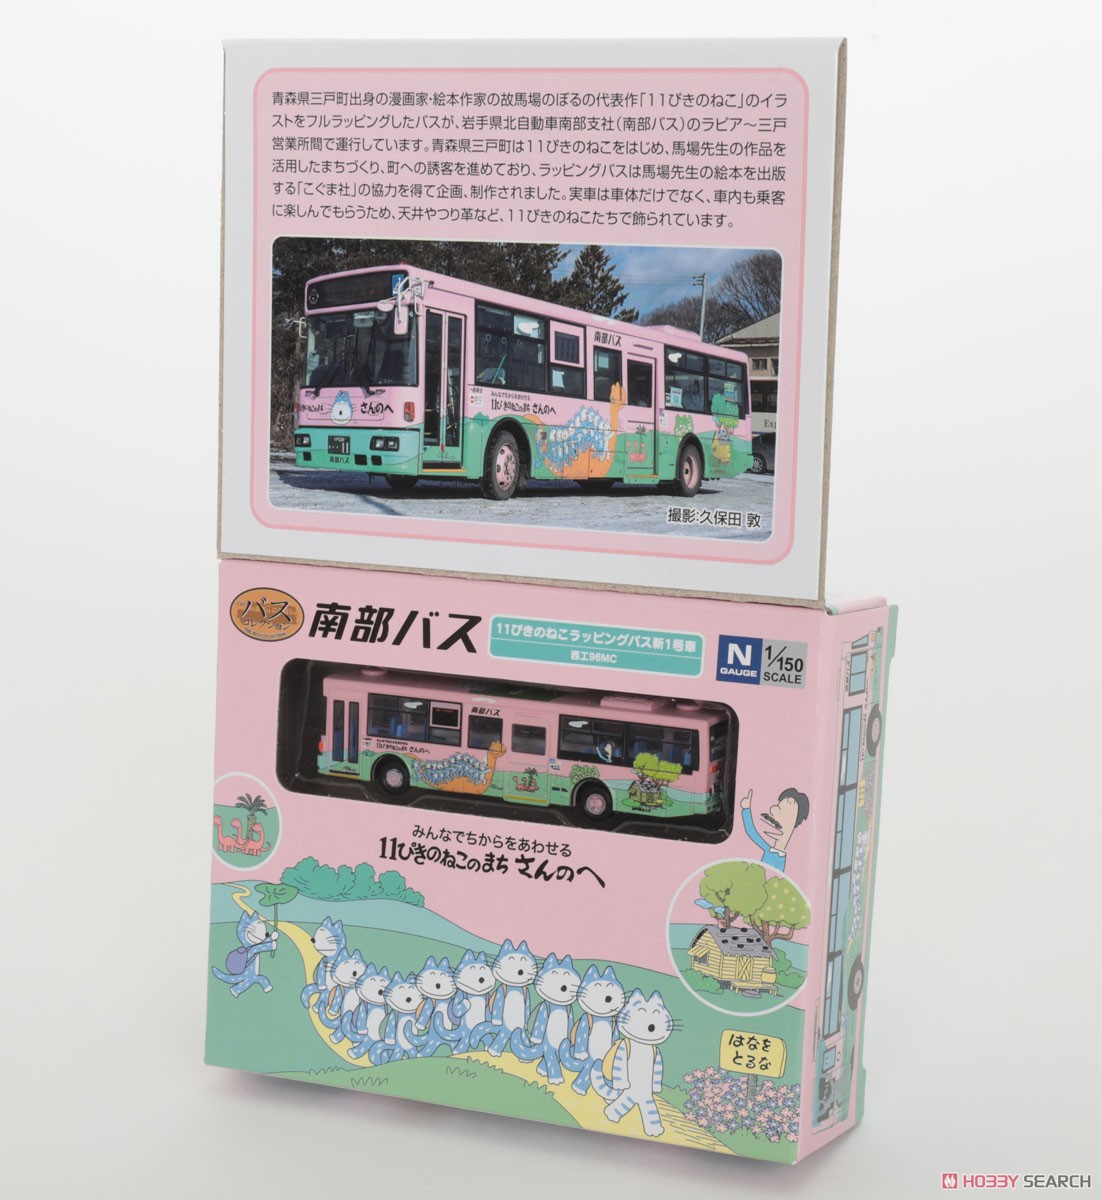 ザ・バスコレクション 南部バス 11ぴきのねこラッピングバス 新1号車 (鉄道模型) パッケージ3